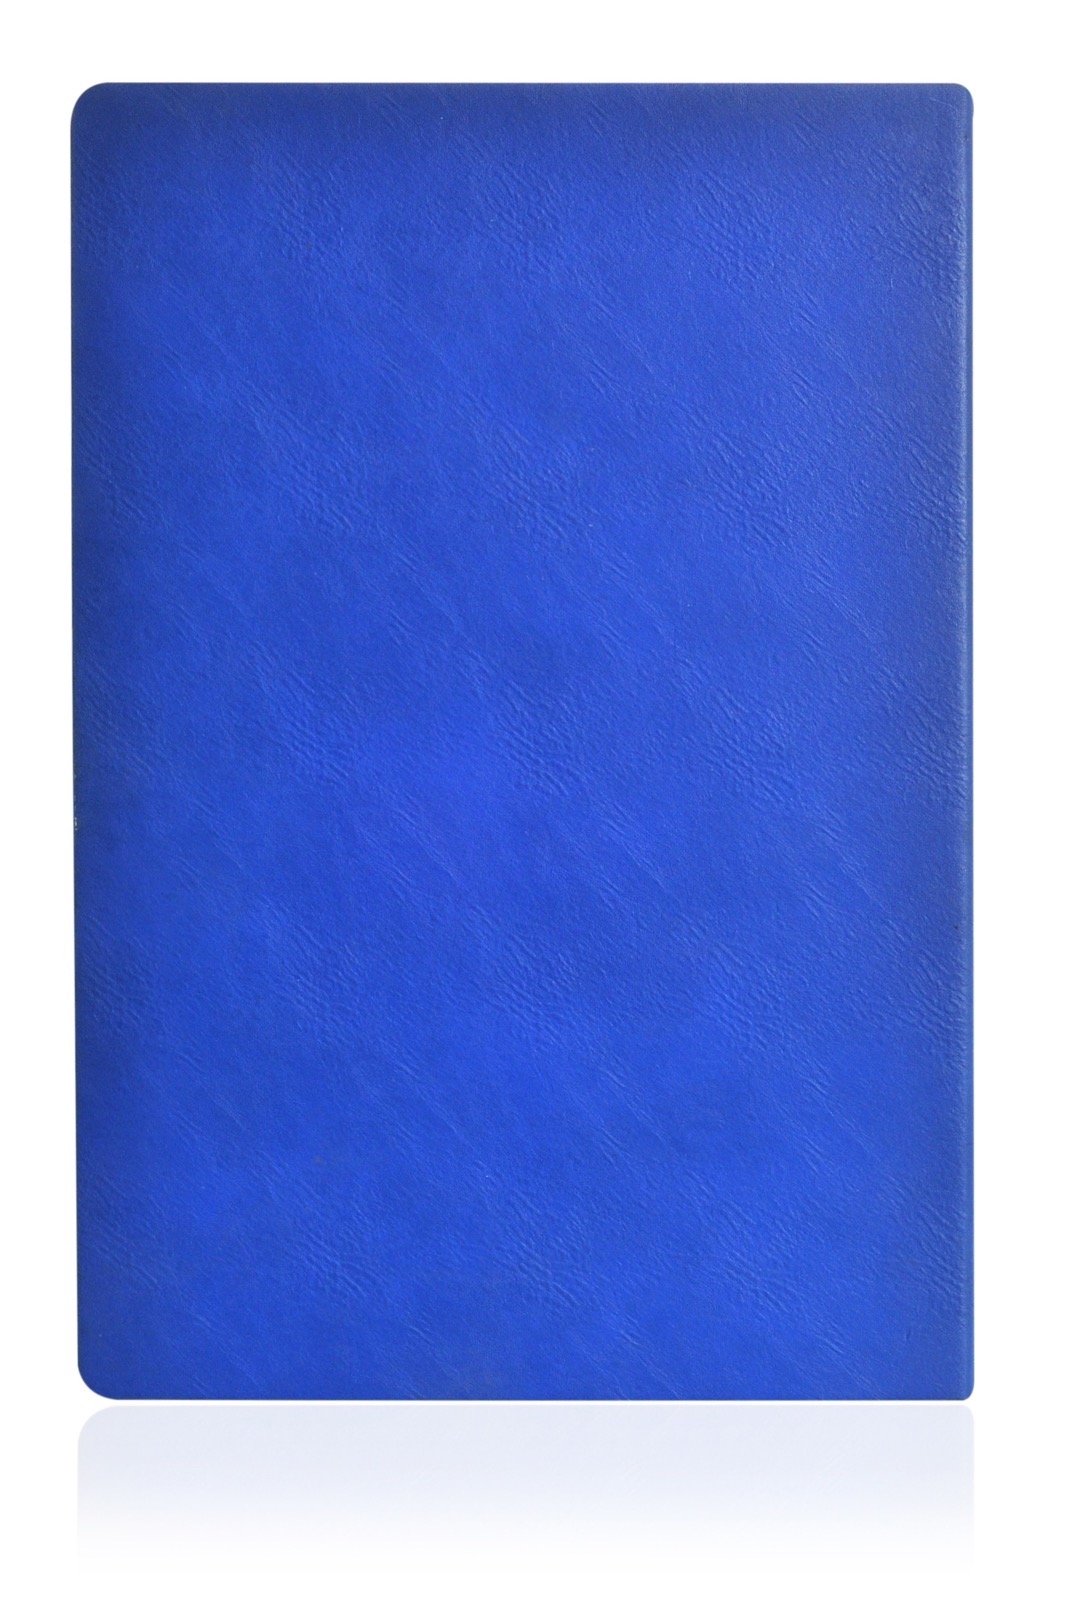 Чехол для планшета iNeez папка в блистере для Samsung Note N8000, синий